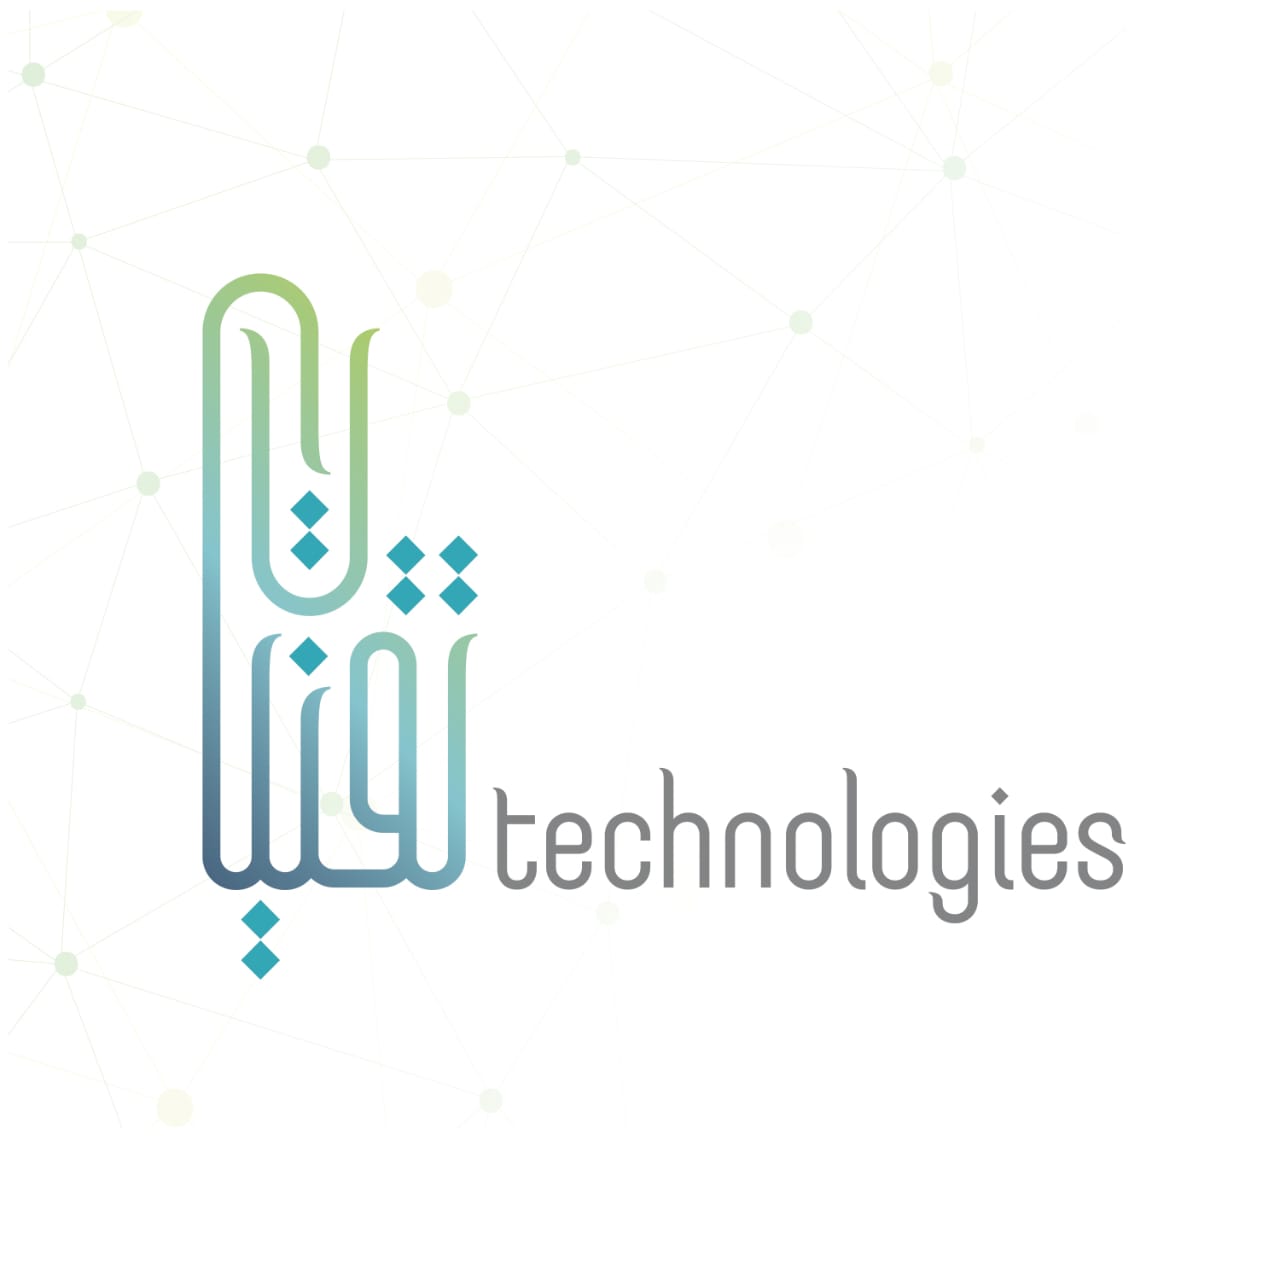 UAE Technologies in Elioplus